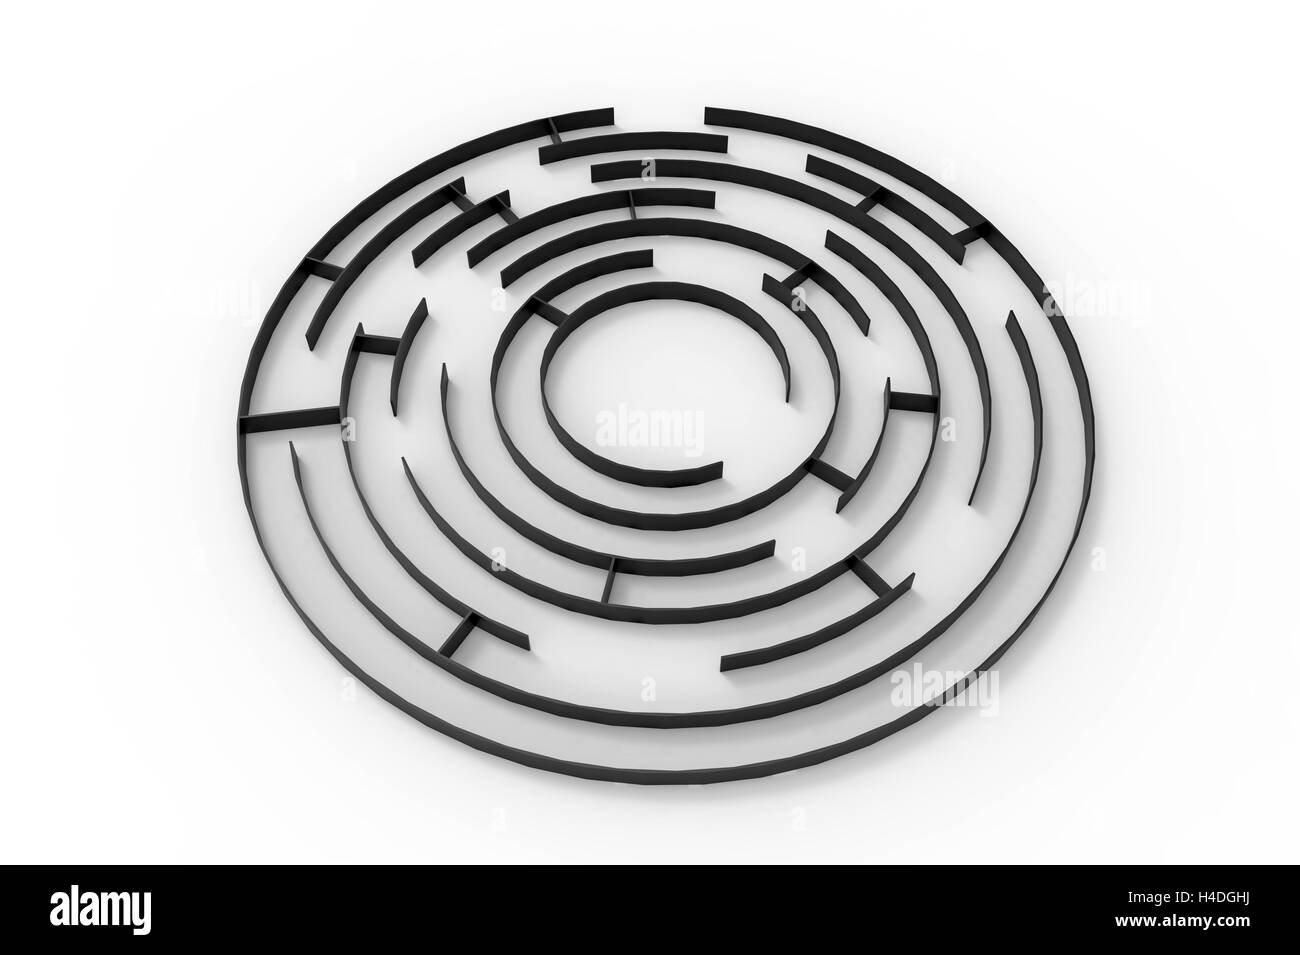 Il labirinto, rendering 3d, isolato su sfondo bianco Foto Stock